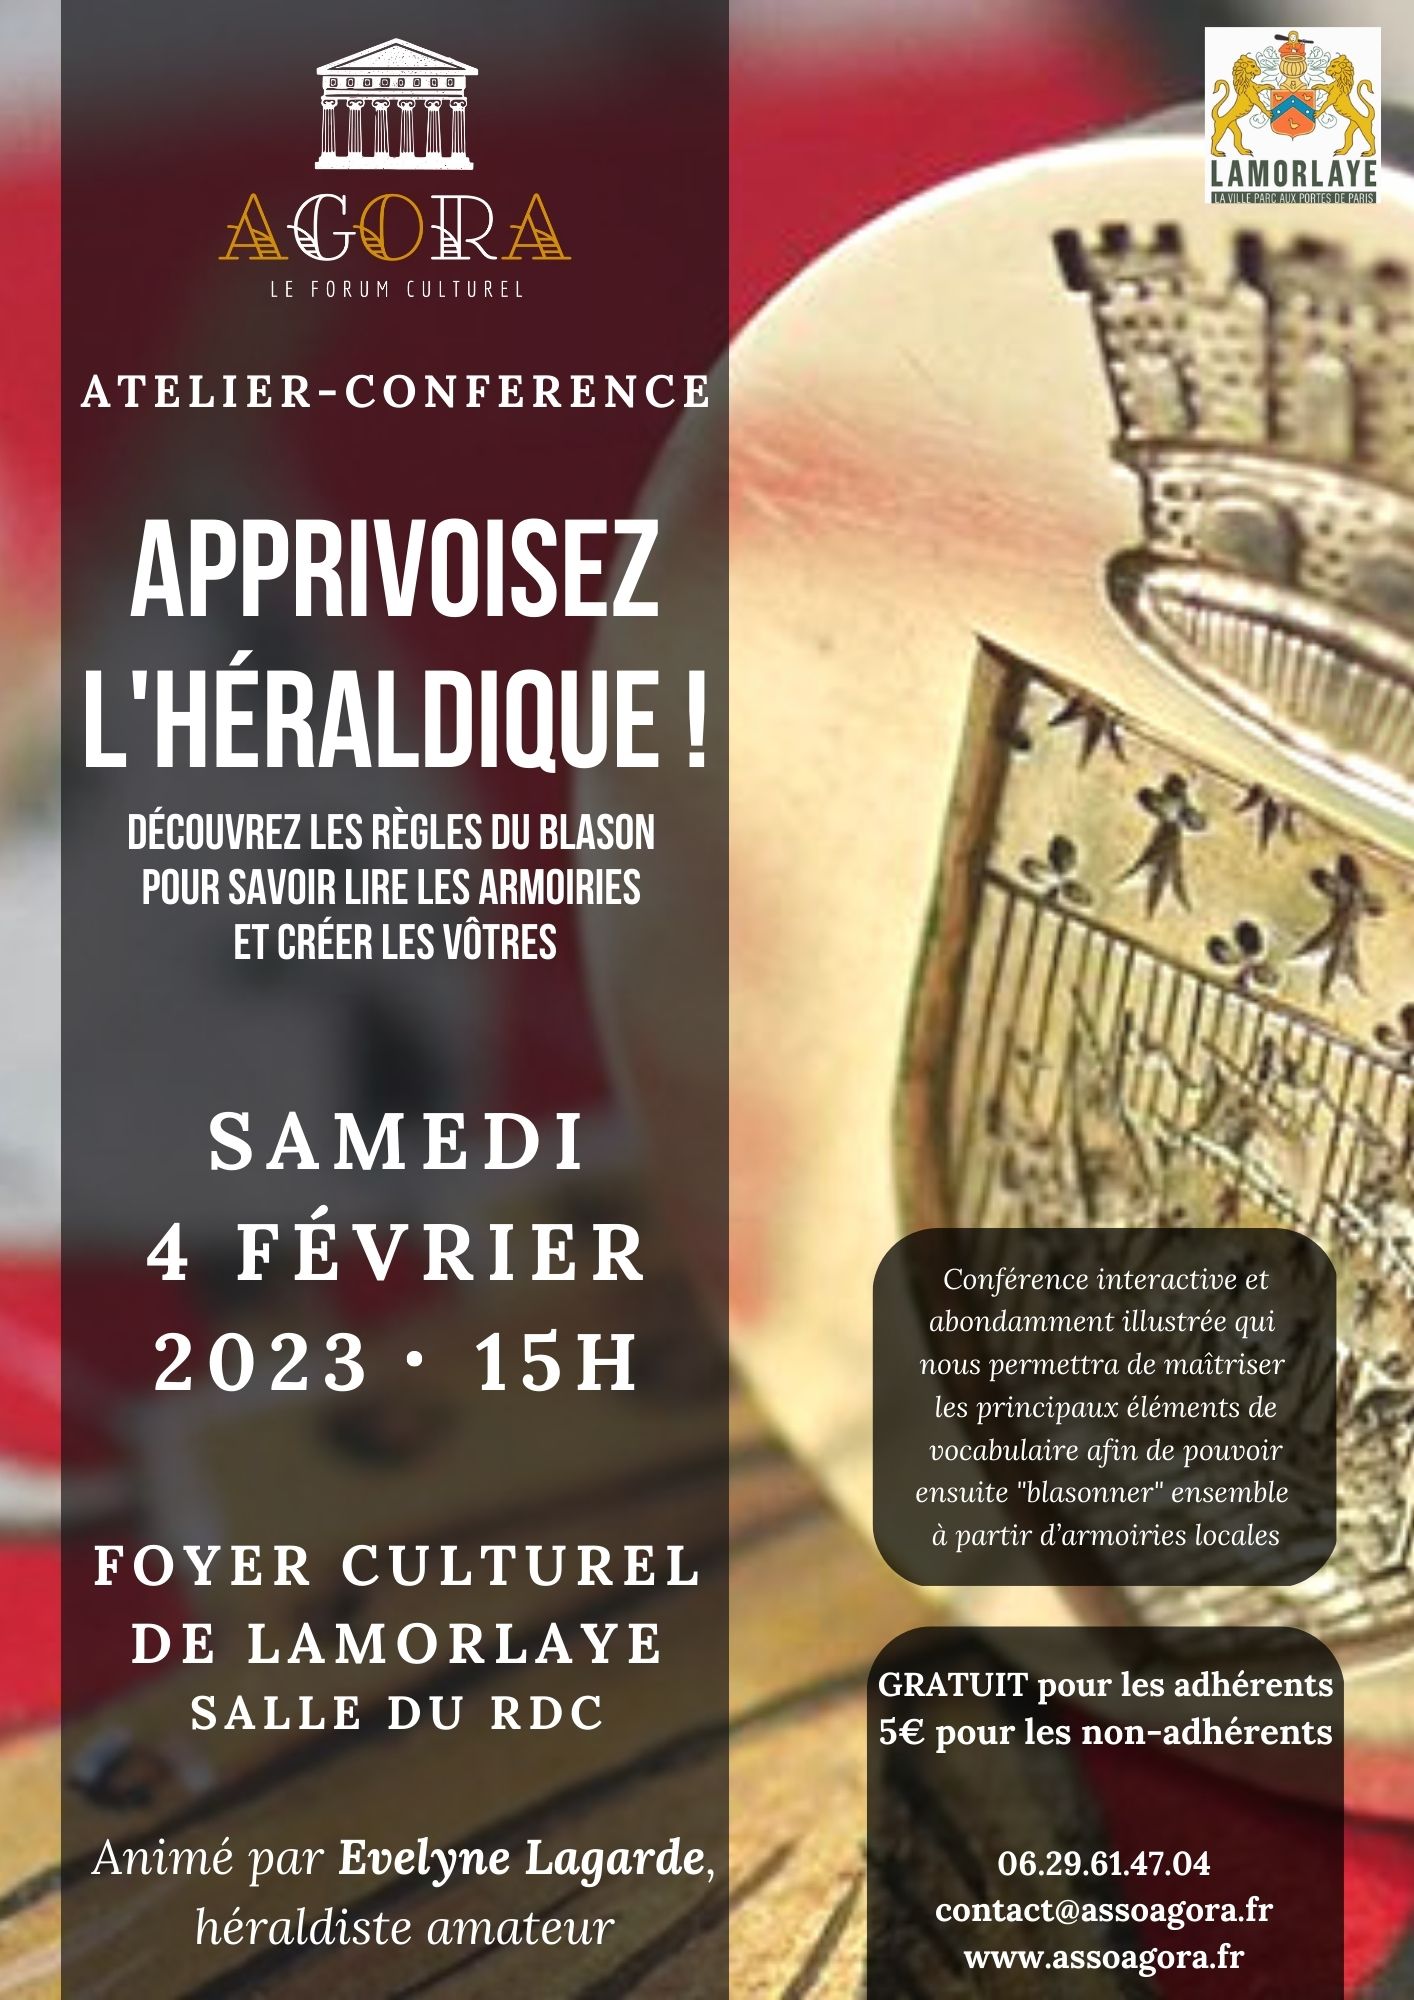 Atelier-conférence – Apprivoisez l’héraldique ! – le 4 février 2023